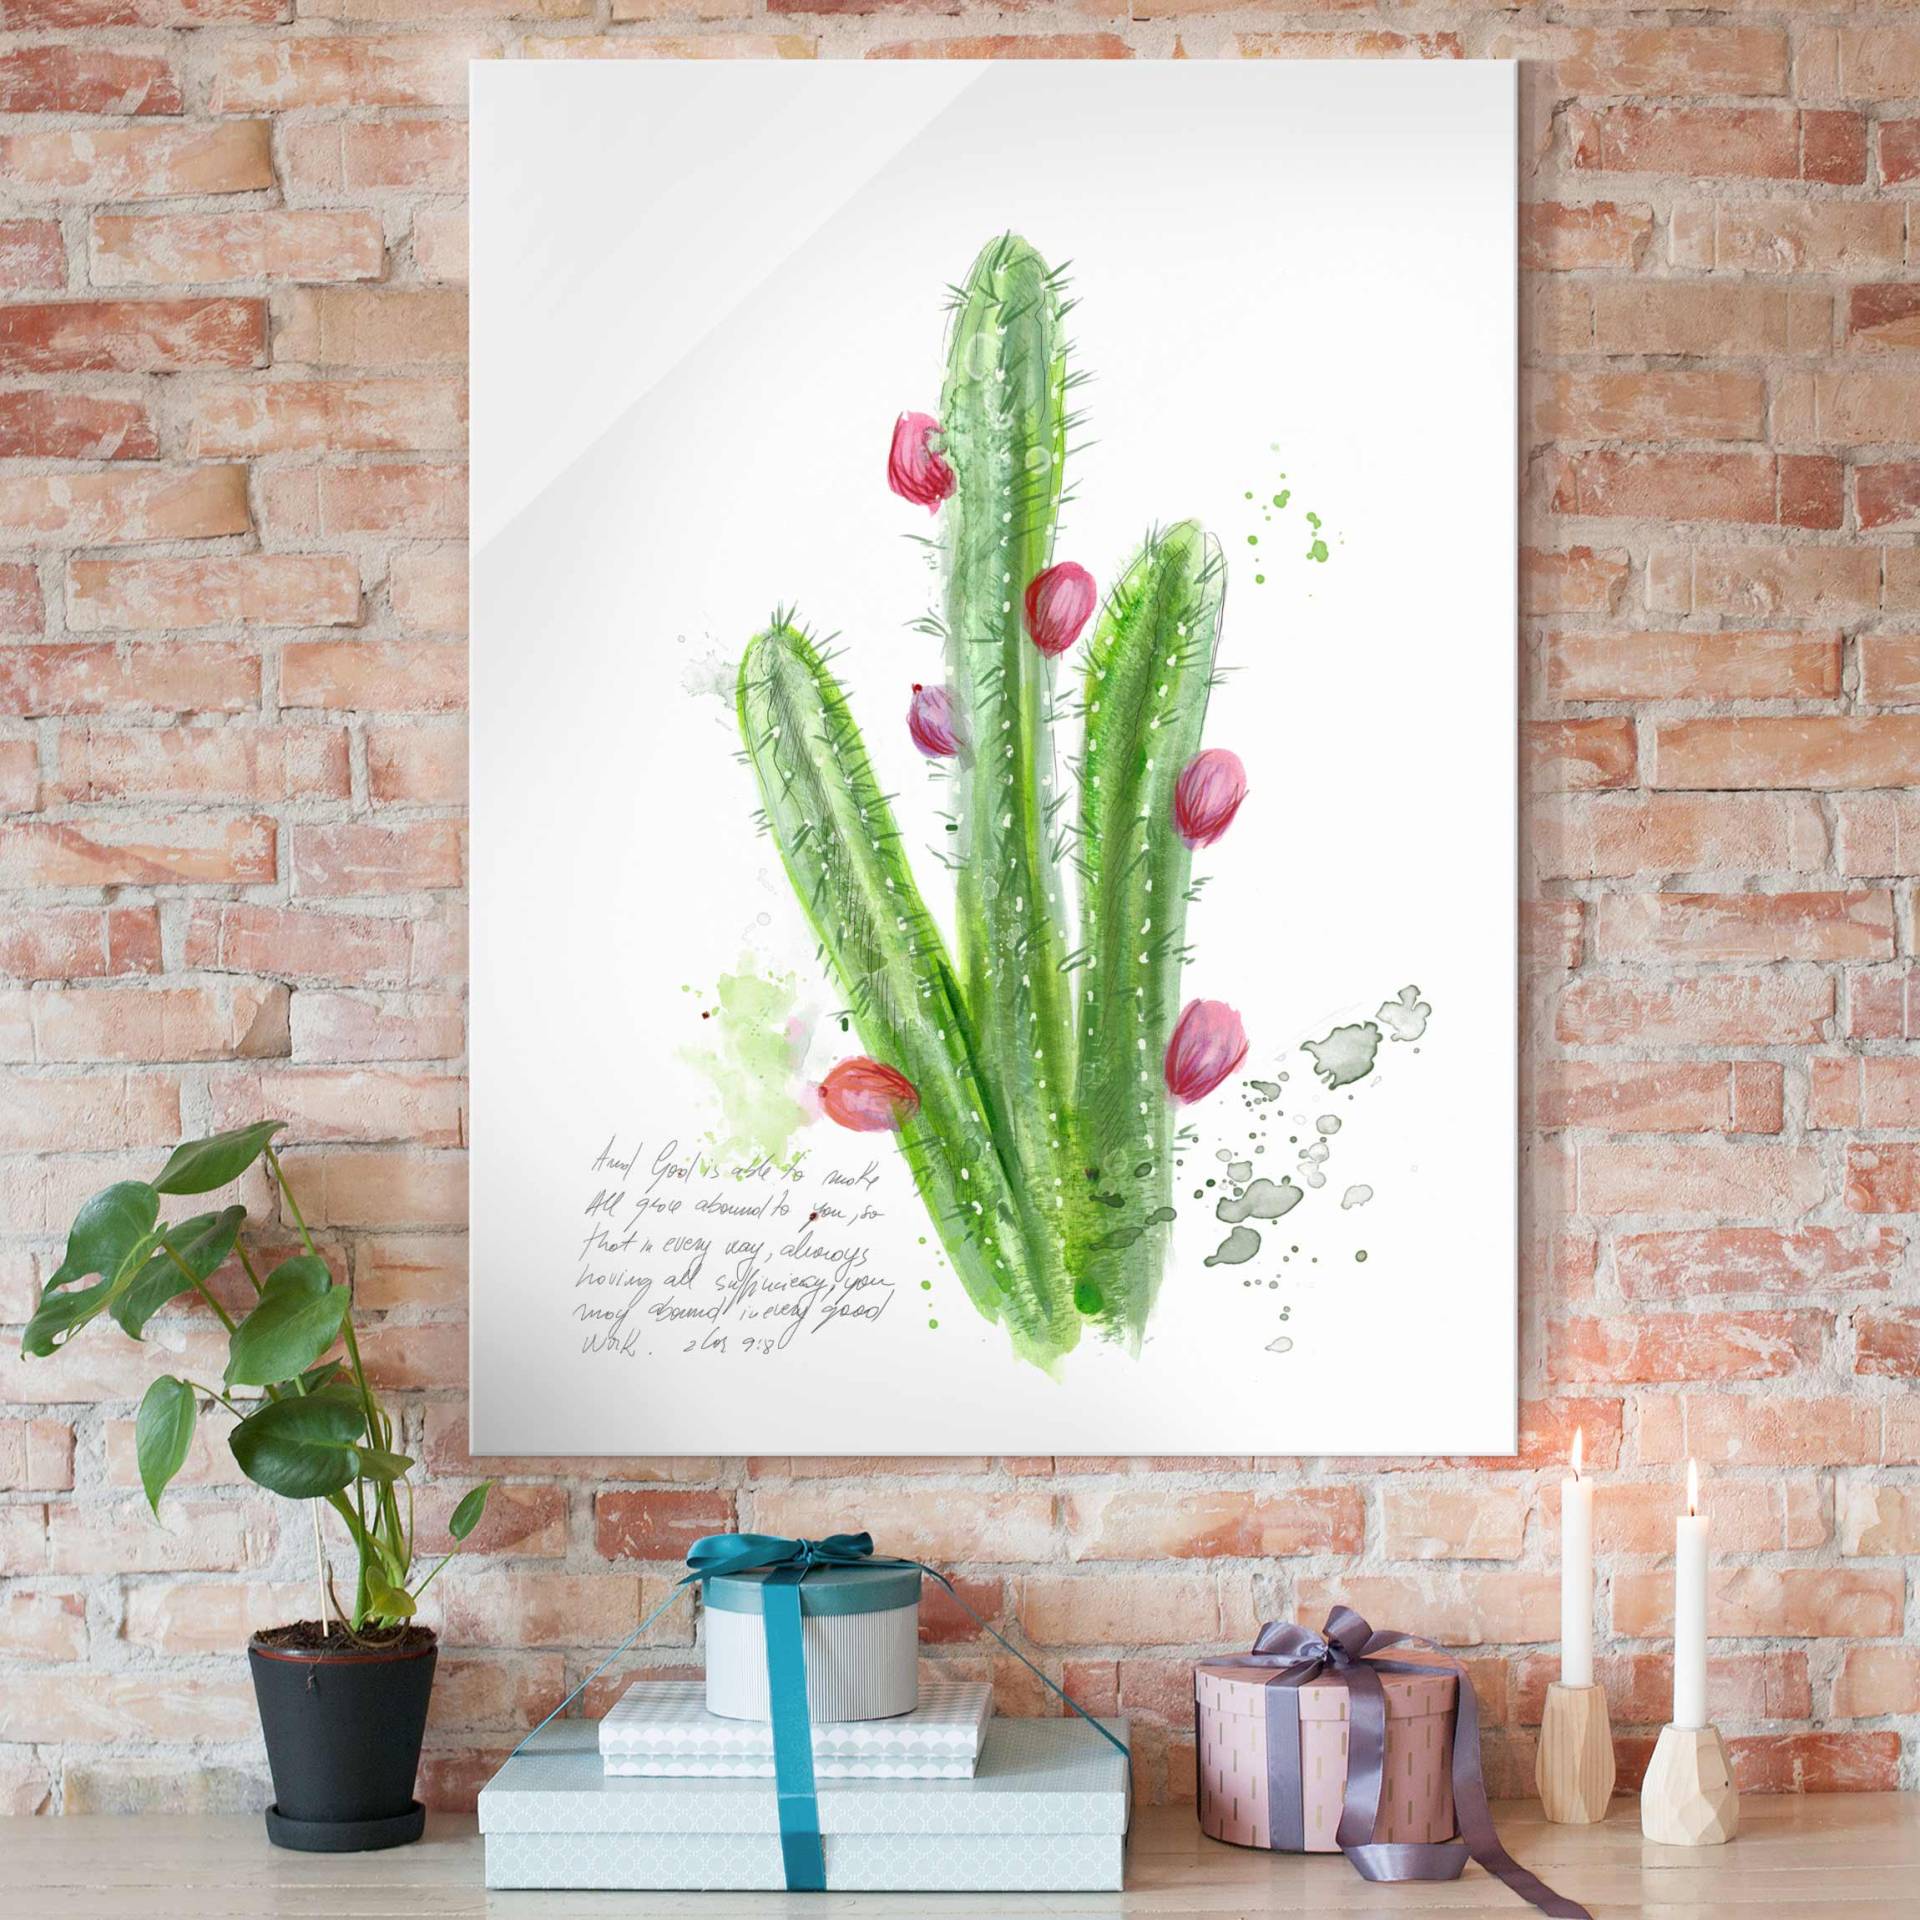 Glasbild Botanik Kaktus mit Bibelvers II von Klebefieber